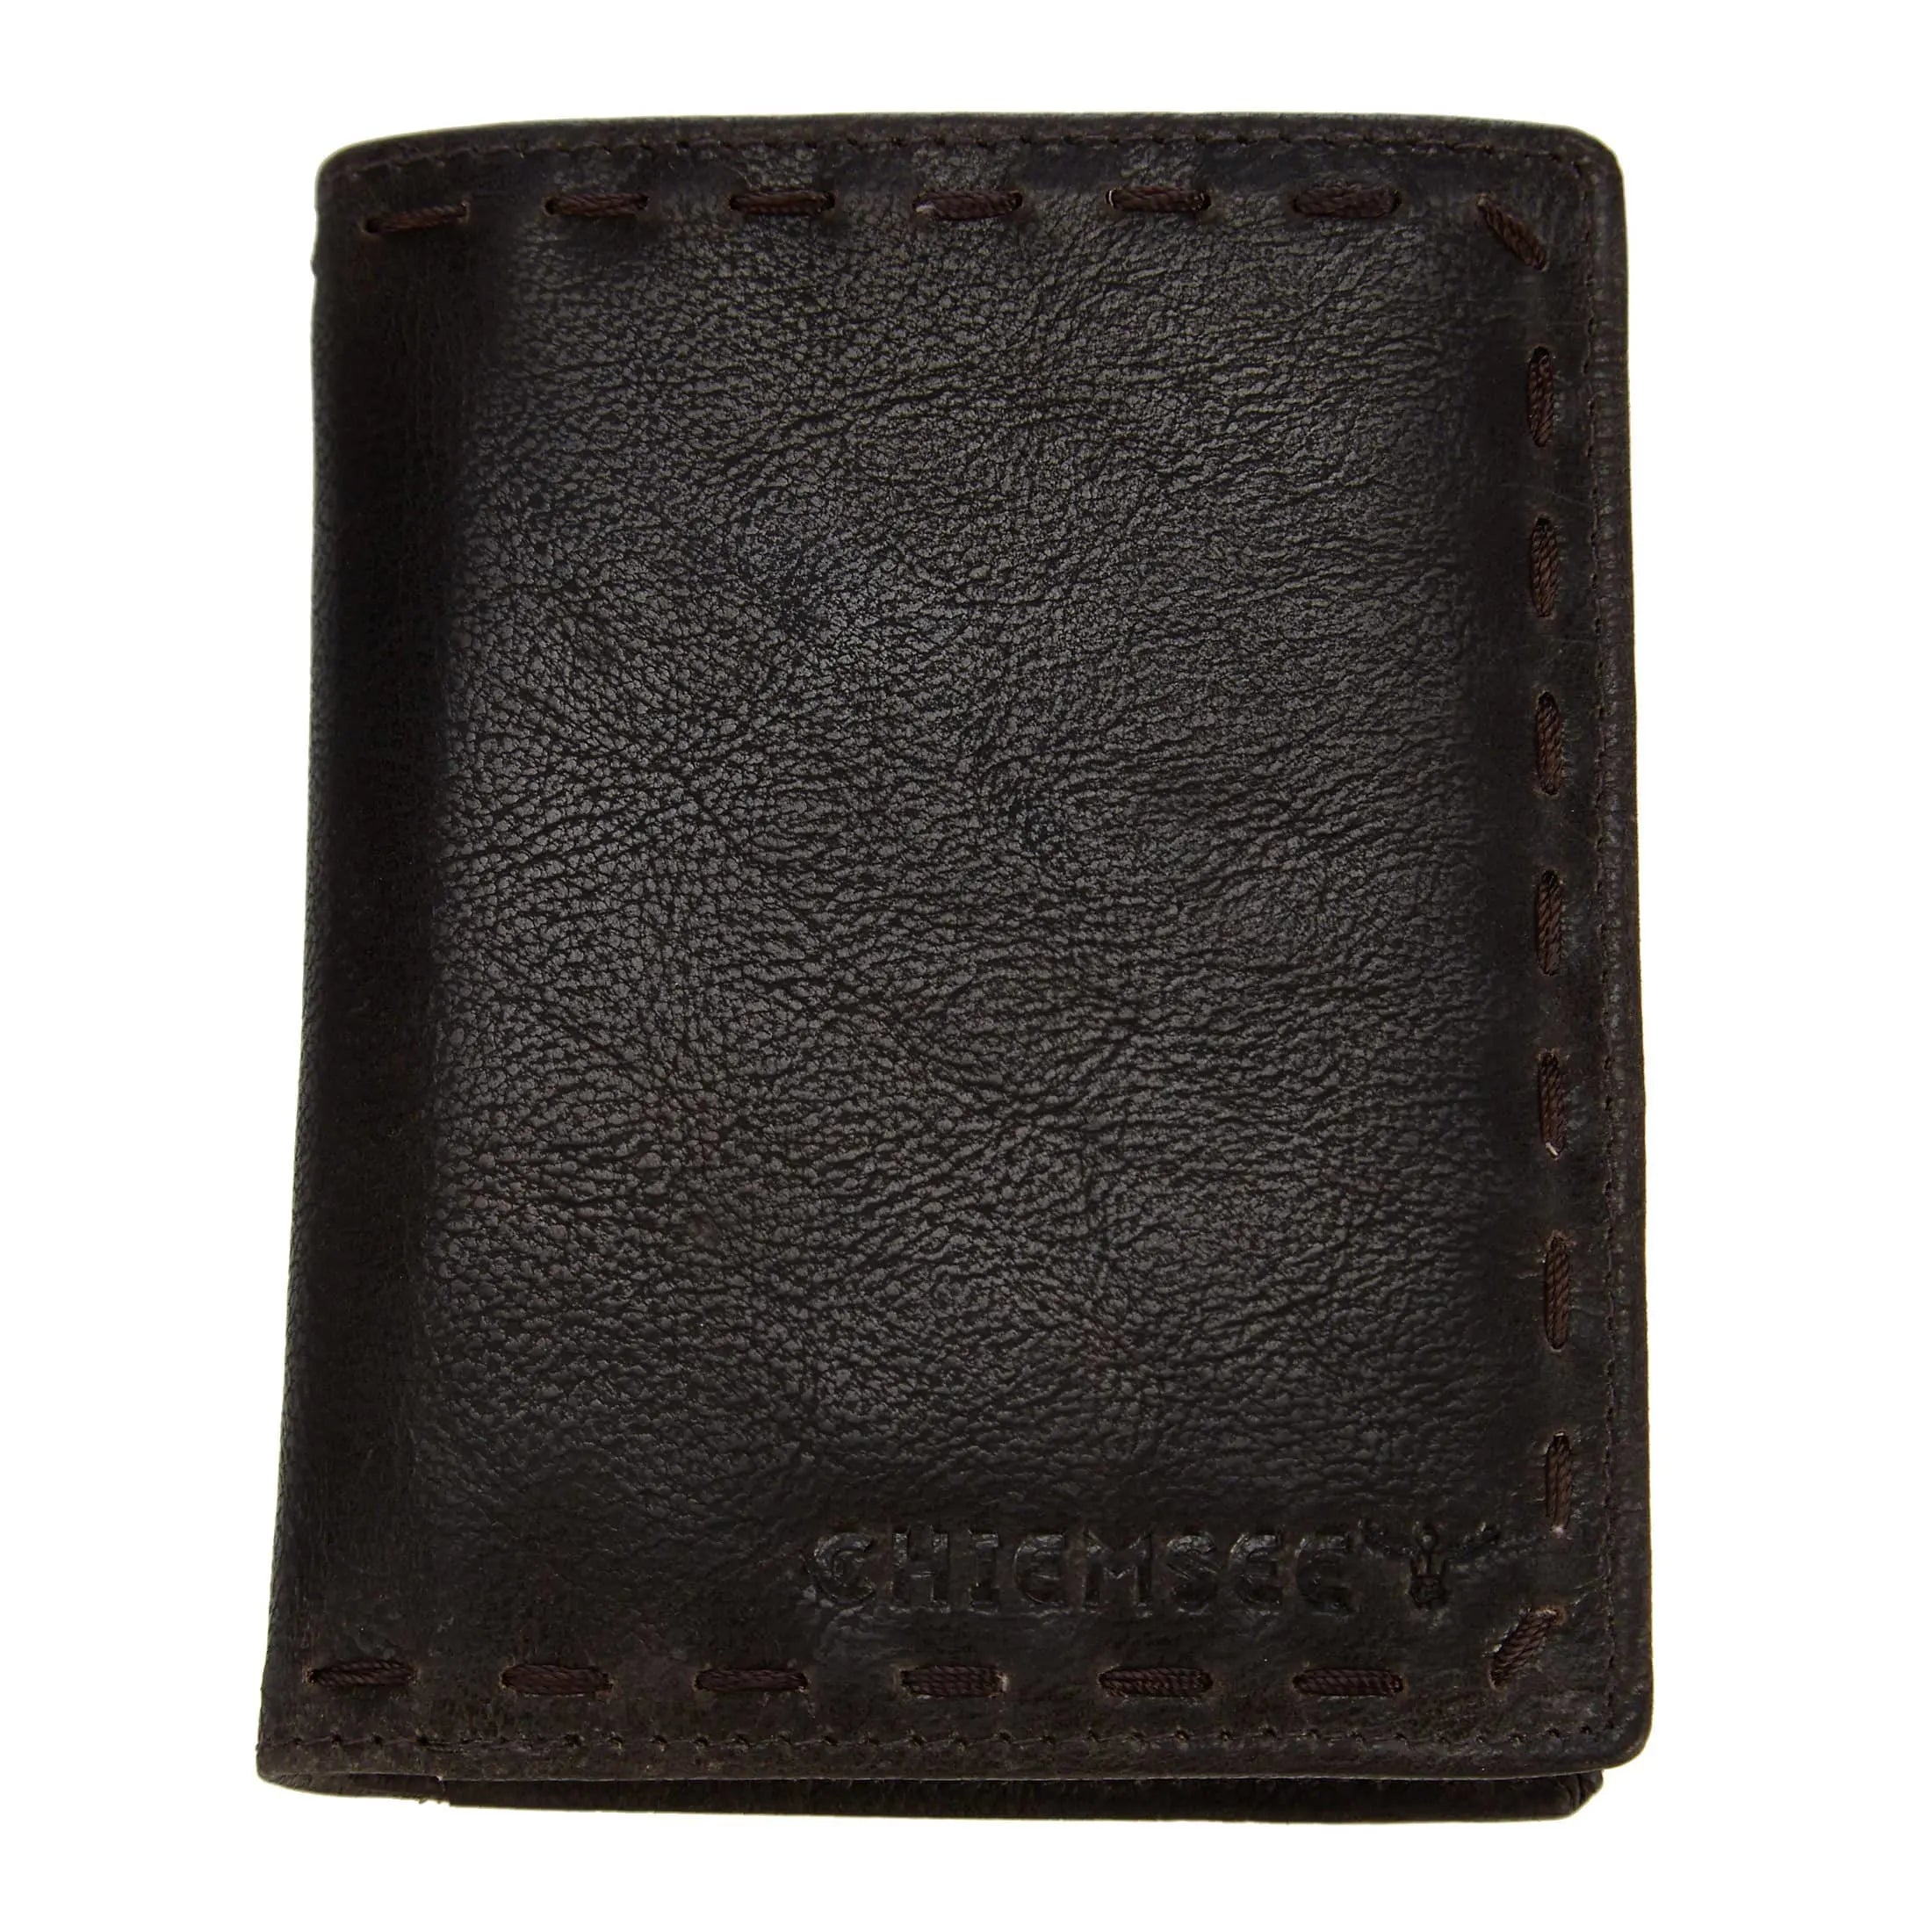 Chiemsee J88 leather wallet 12 cm - dark brown